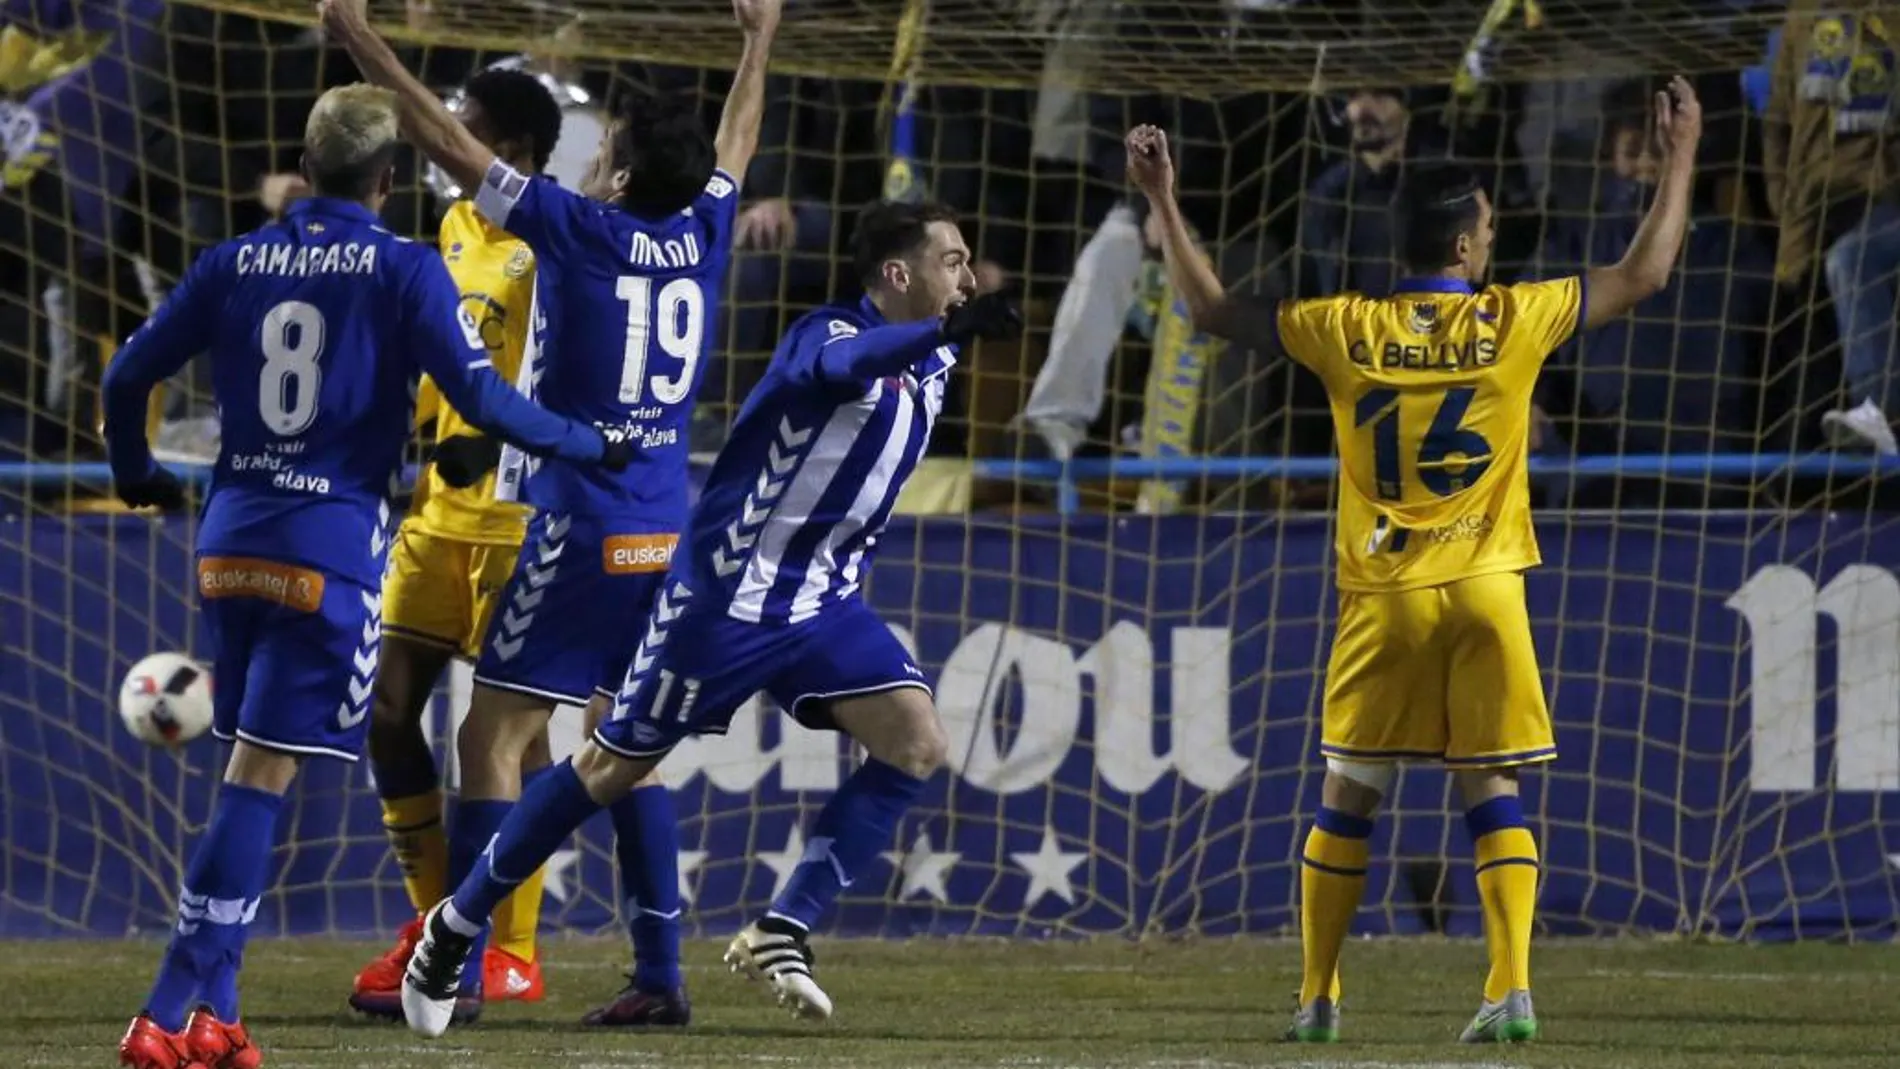 Los jugadores del Deportivo Alavés celebran el gol del delantero Ibai Gómez durante el partido de ida de los cuartos de final de la Copa del Rey contra el Alcorcón